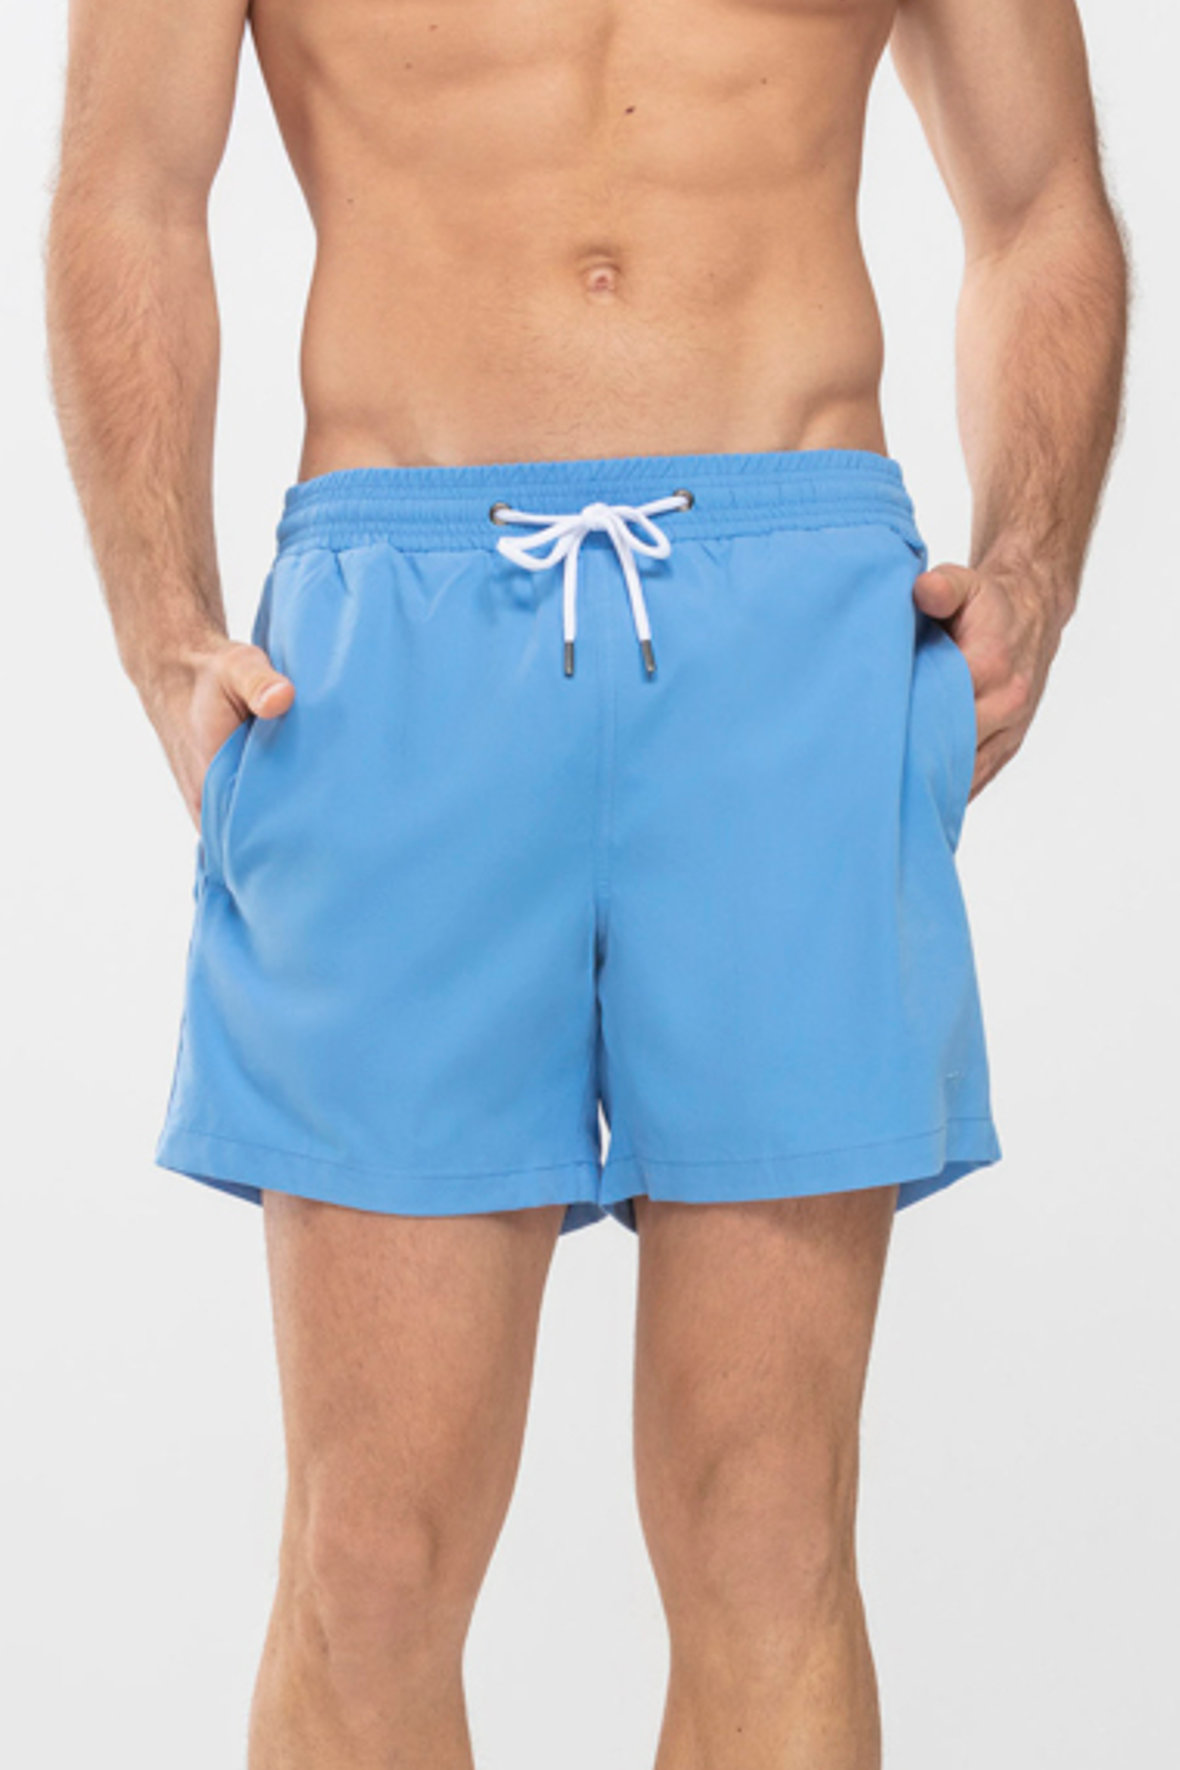 Långiver beløb rygte Mey swim shorts - serie Darley - badeshorts lyseblå - MÆND - Hos Lohse